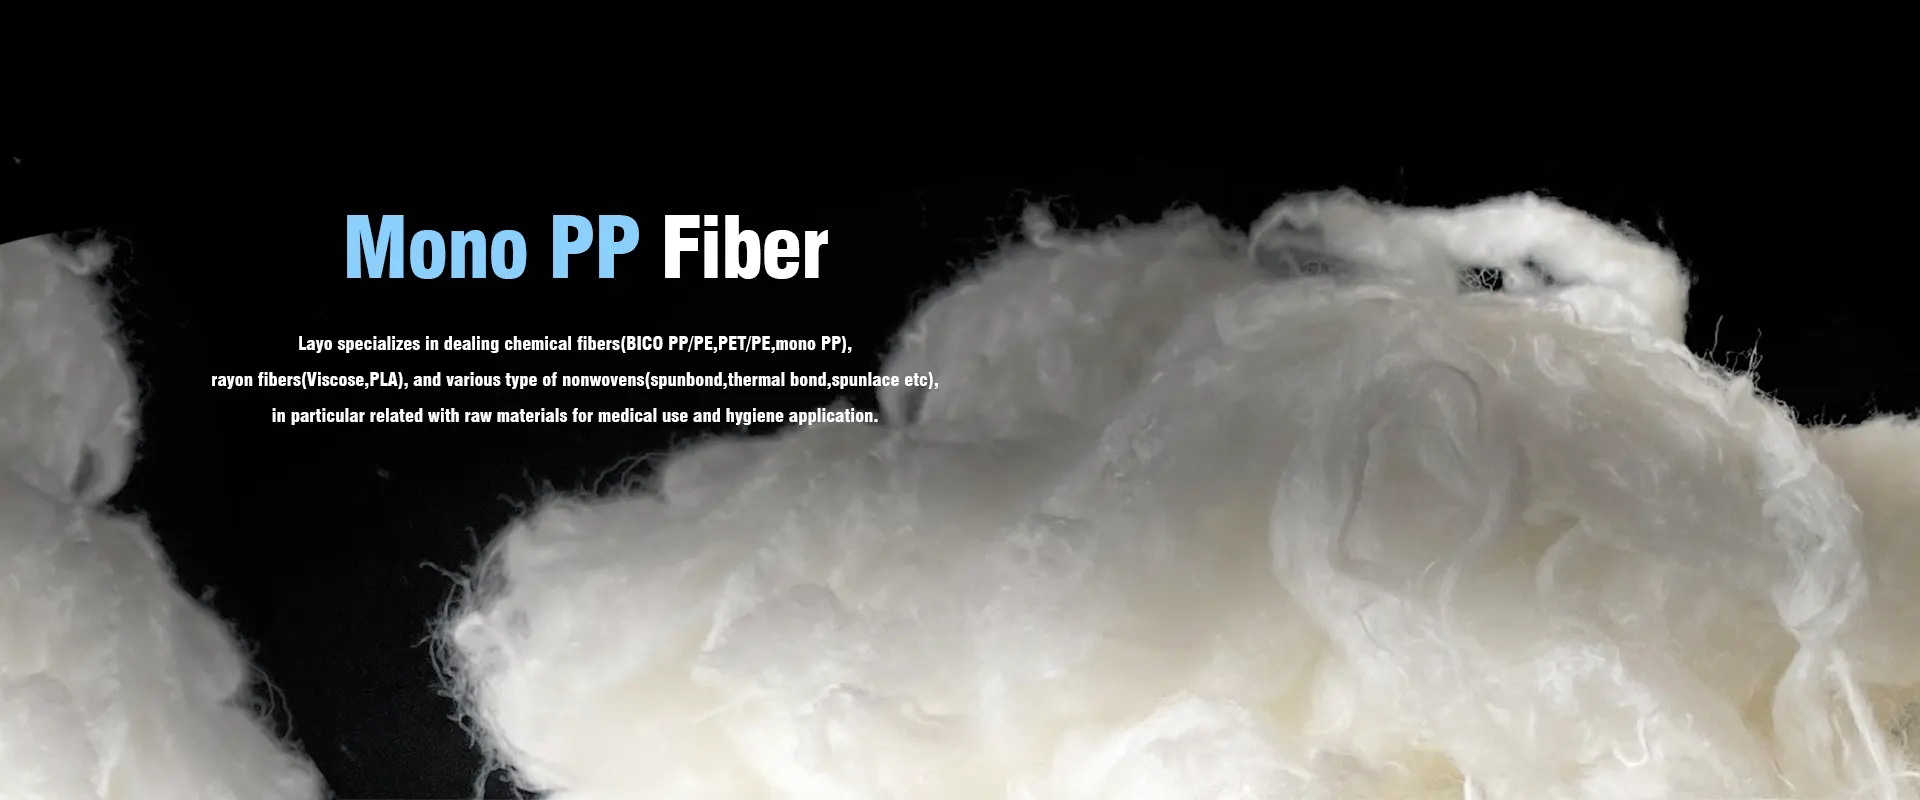 Fournisseurs et fabricants de fibres mono PP